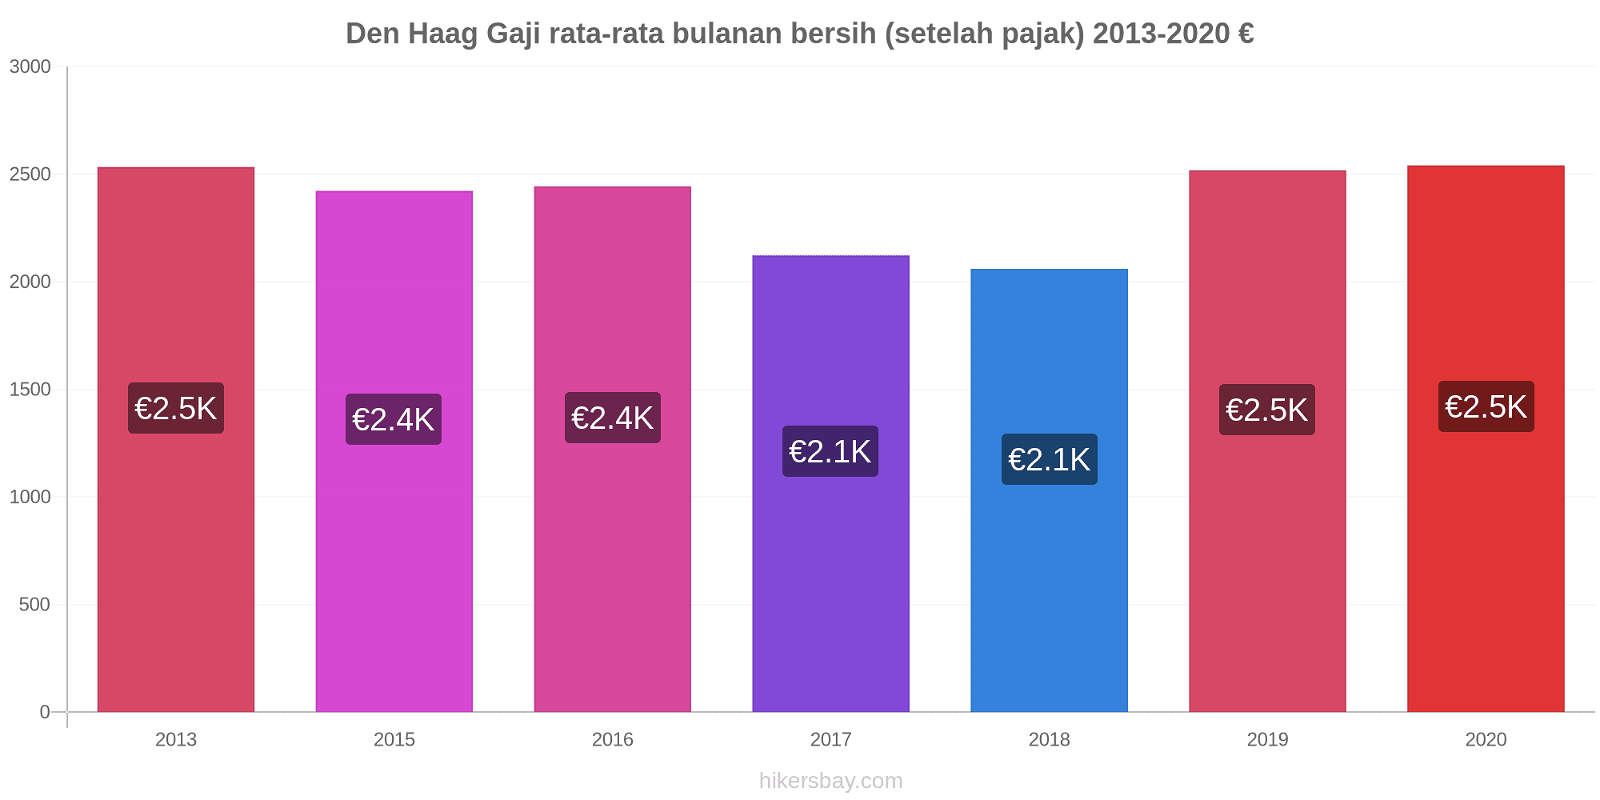 Den Haag perubahan harga Gaji rata-rata bulanan bersih (setelah pajak) hikersbay.com